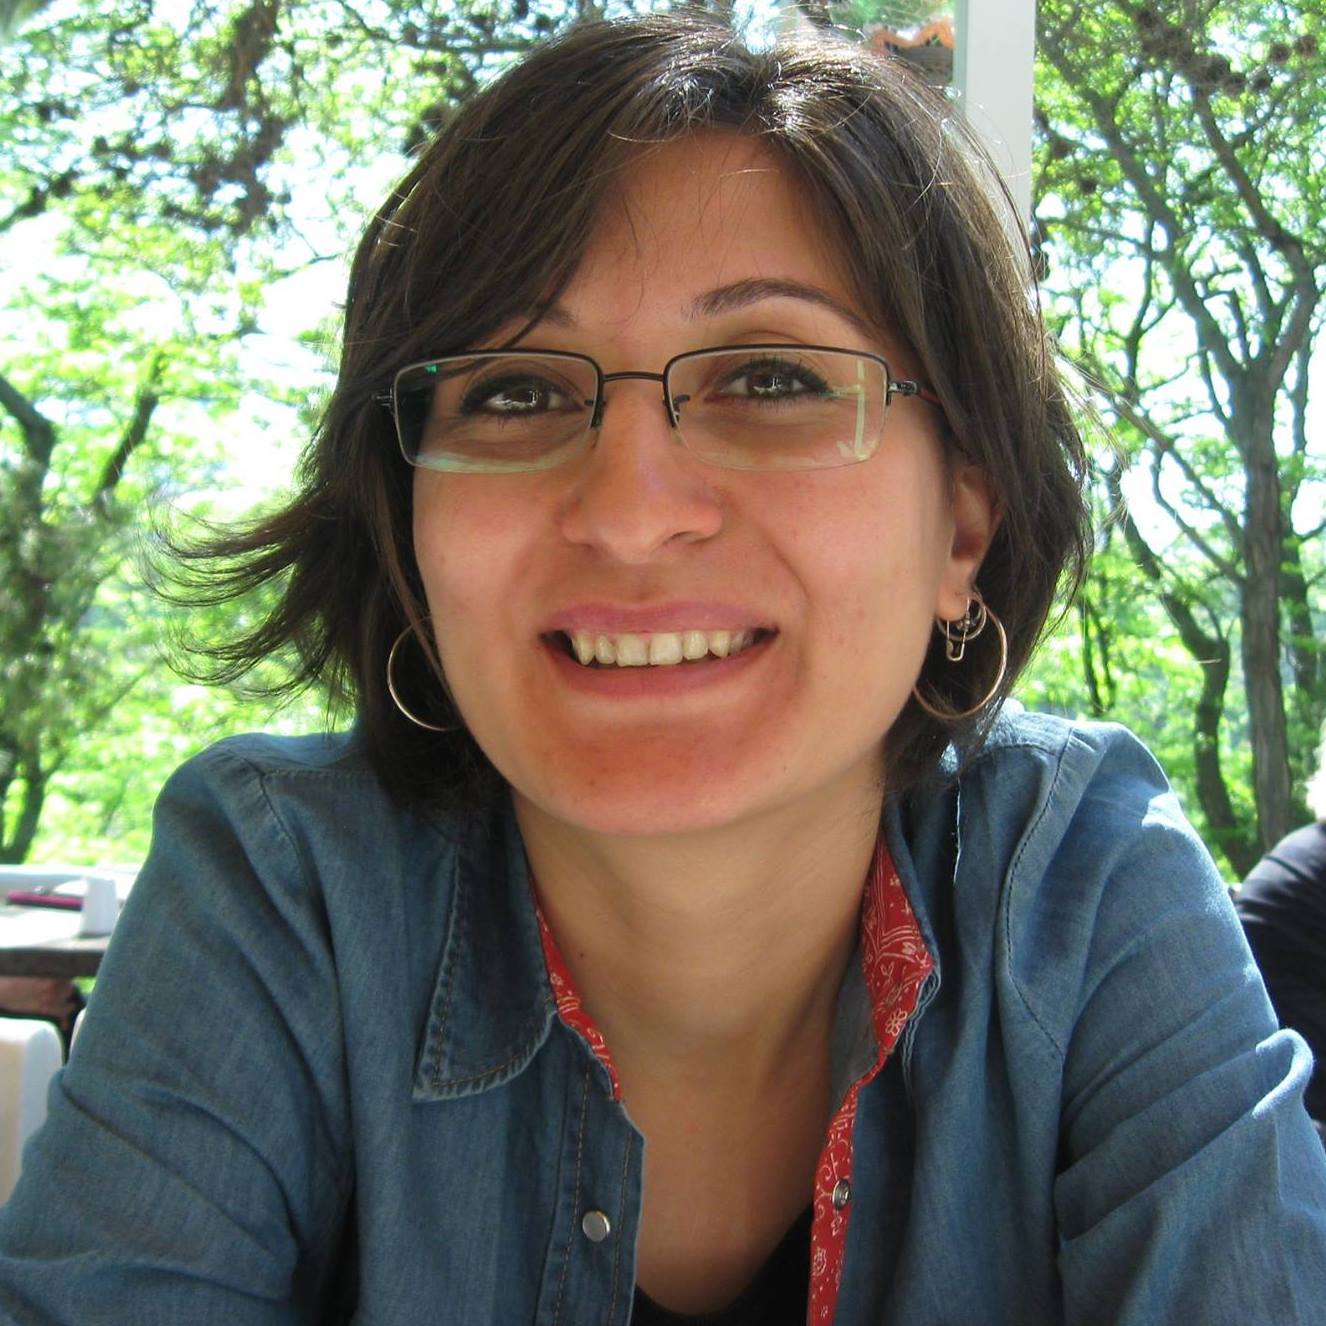 Hukuk Defterleri'nden Avukat Selin Aksoy'la yenilenen sitelerini konuştuk